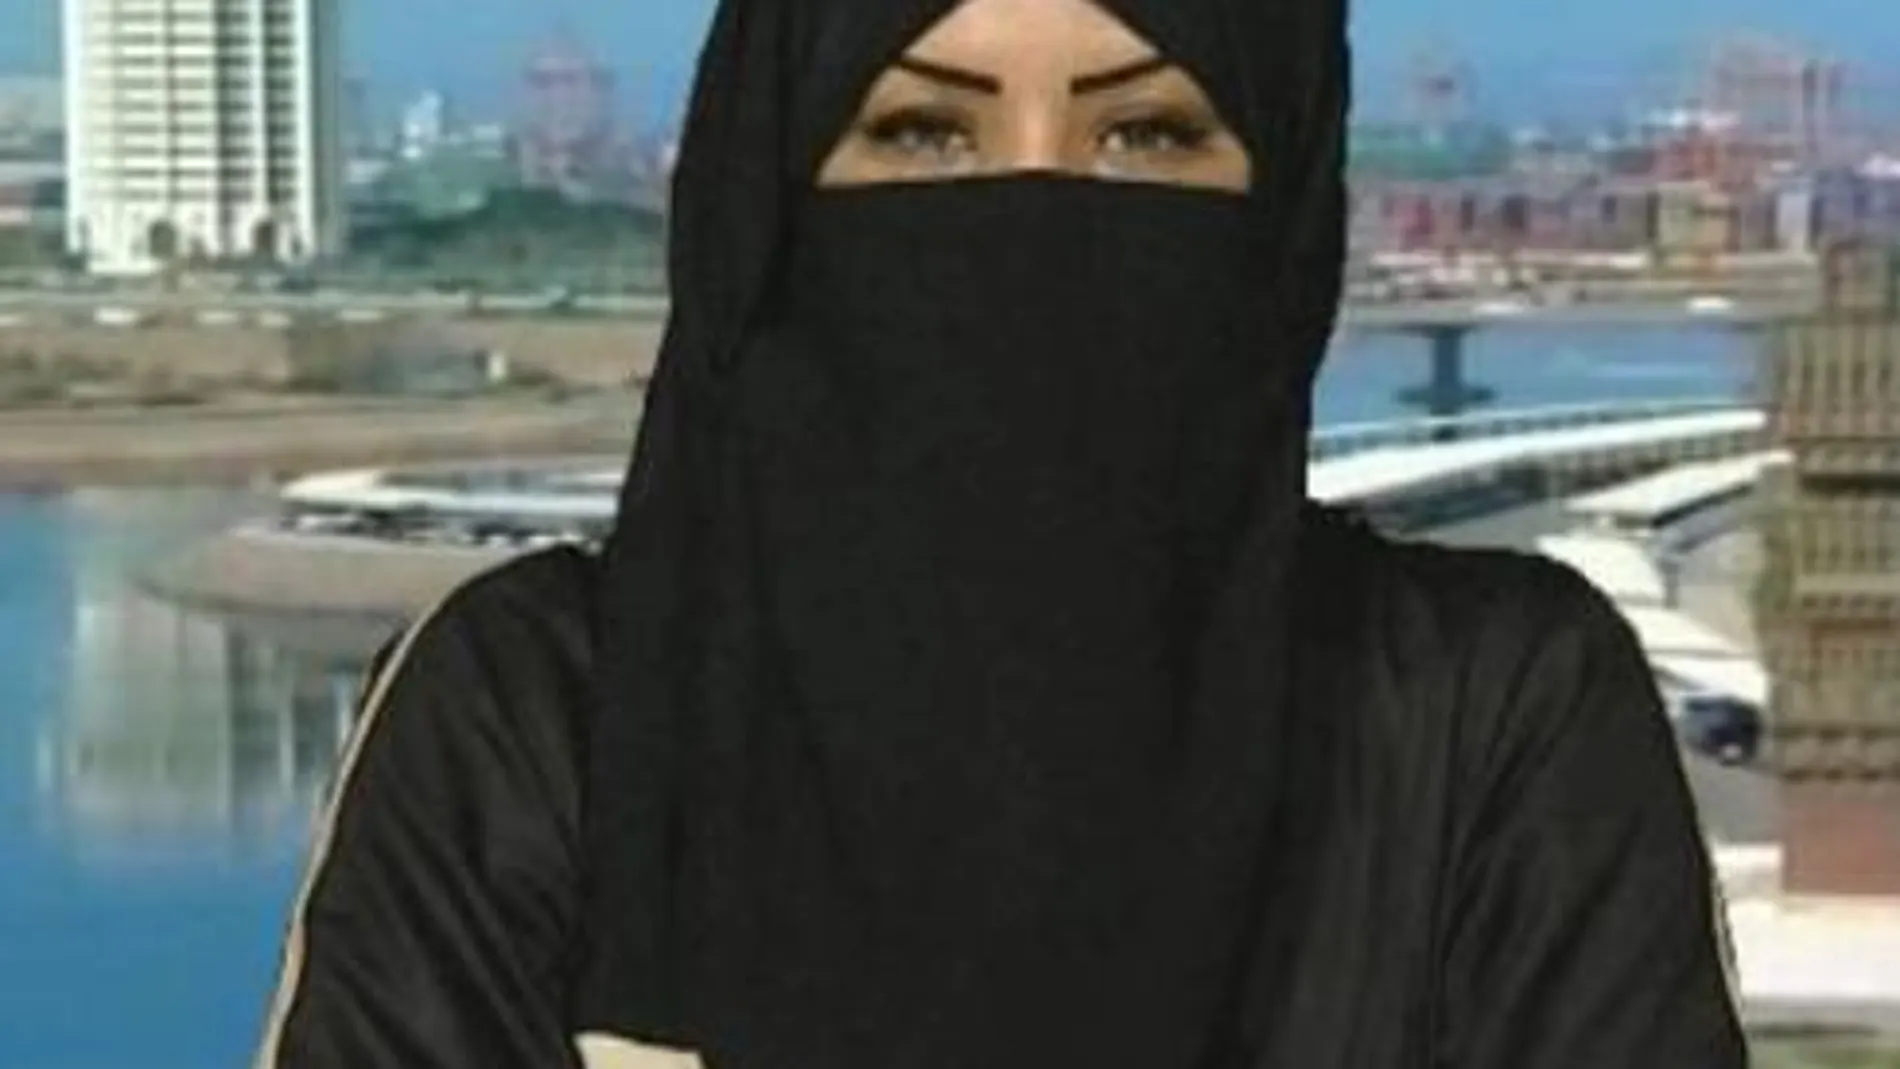 Bayan Alzahran fue la primera mujer en obtener la licencia en Arabia Saudí